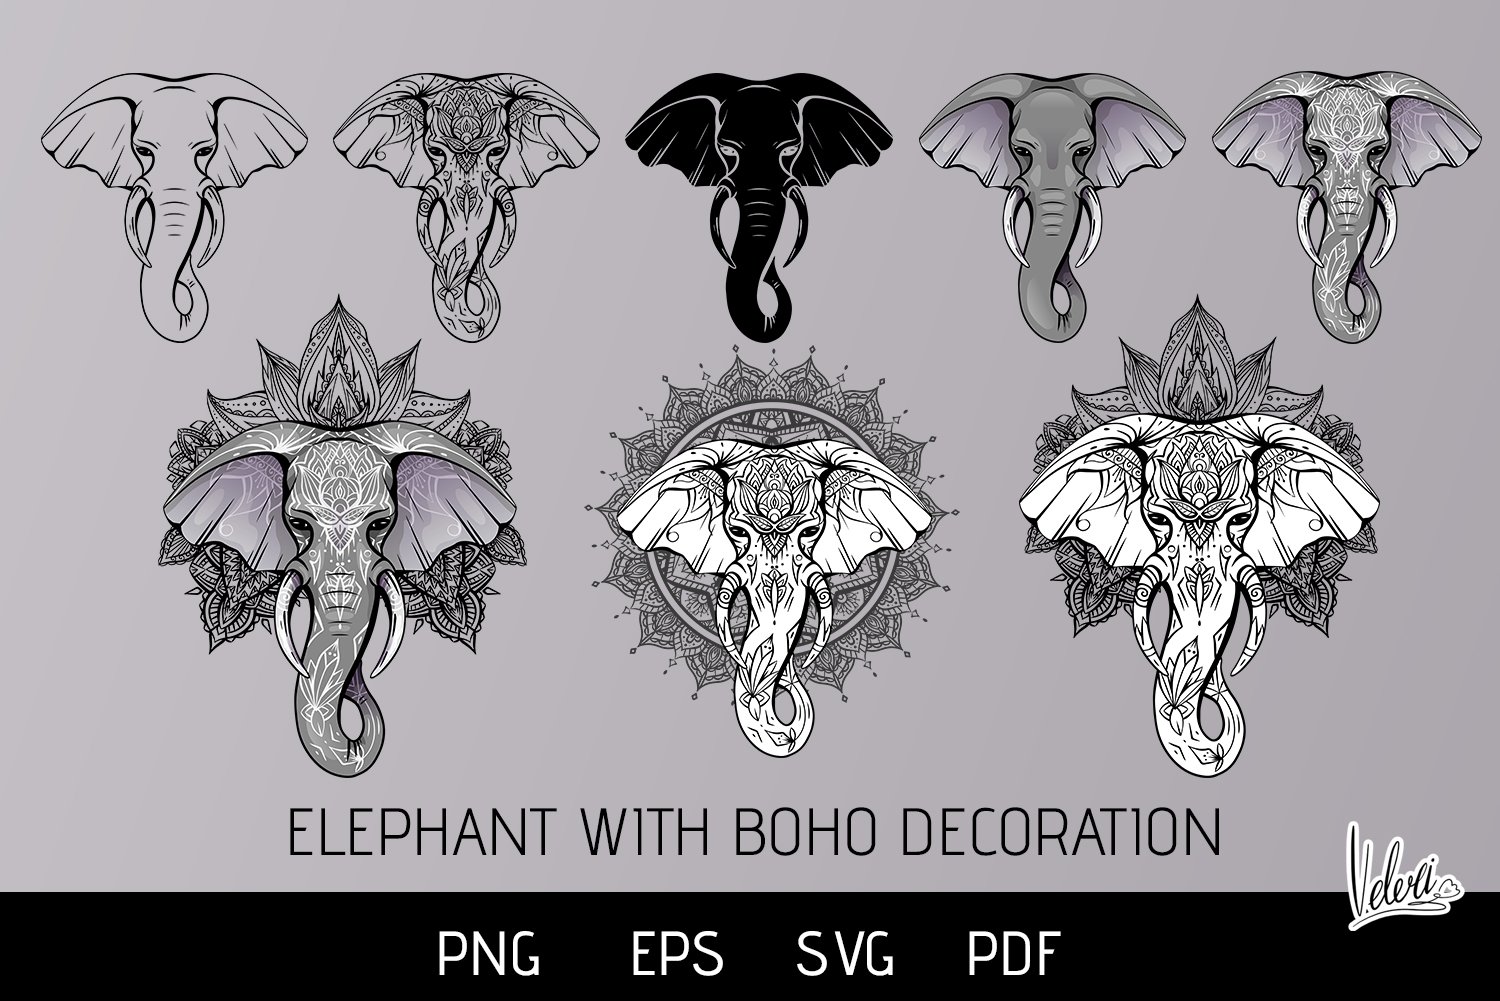 Free: Stylized ethnic boho elephant portrait isolated vector image -  nohat.cc